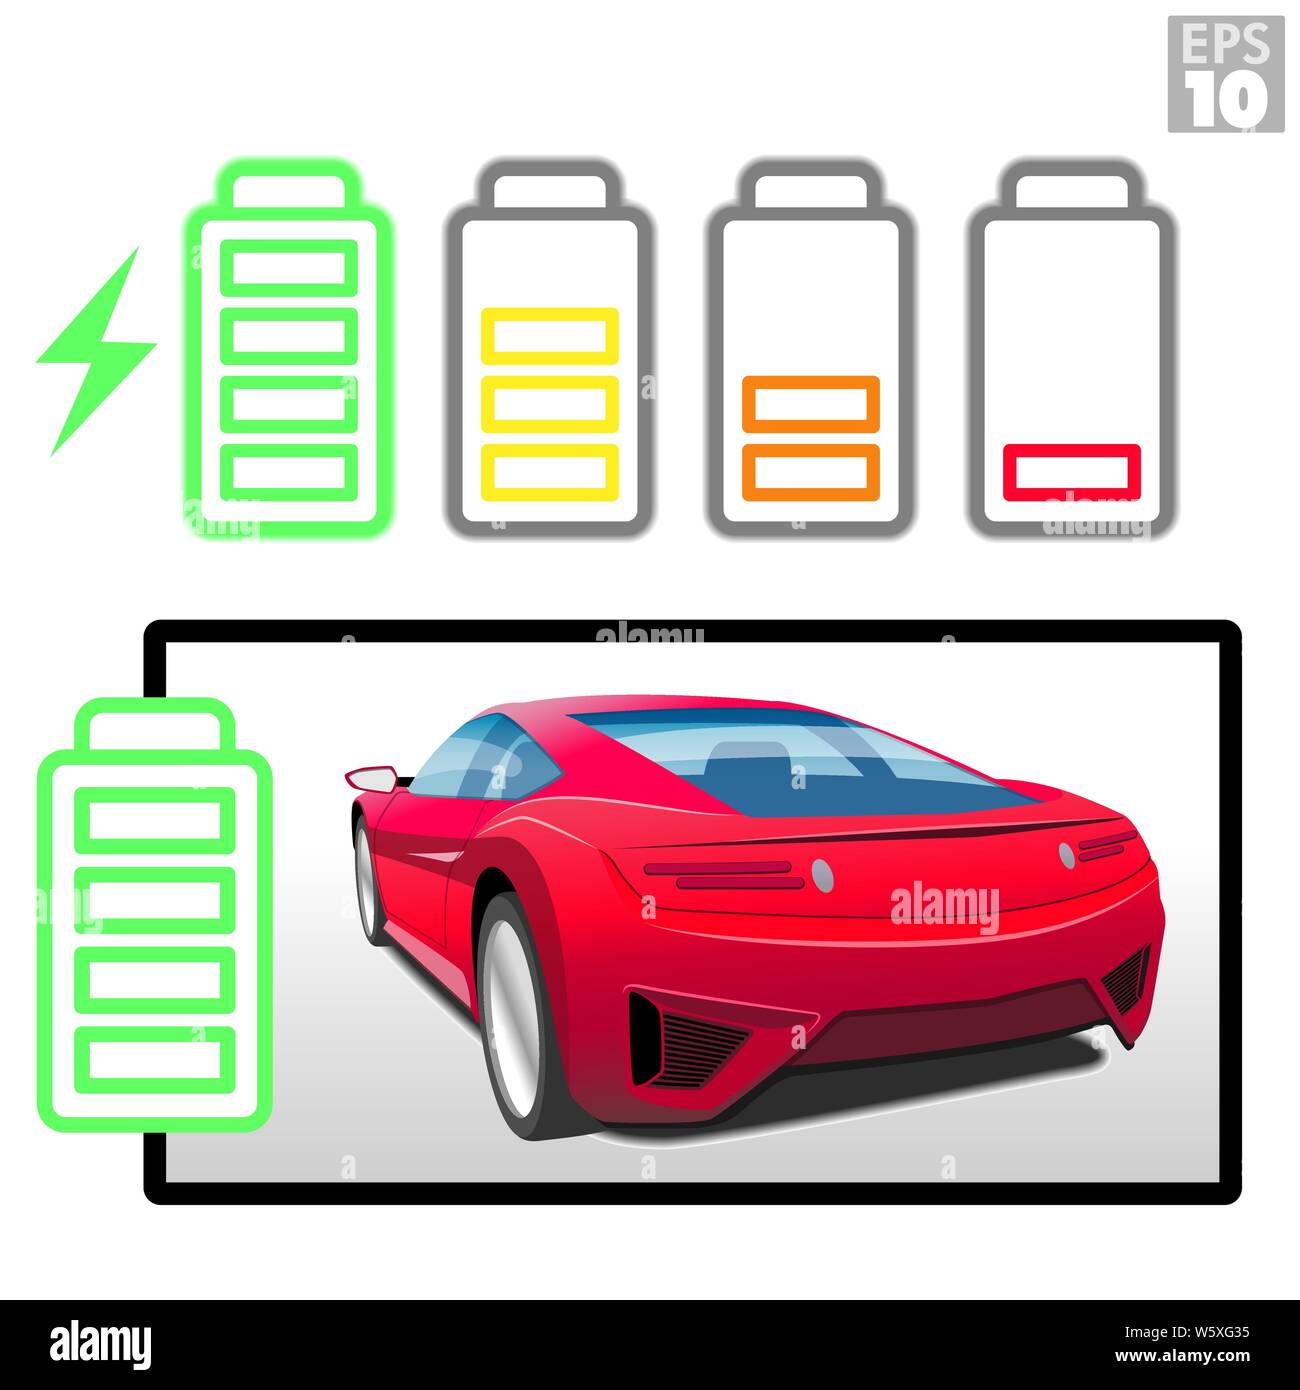 Une voiture de sport électrique rouge avec différentes icônes de niveau batterie rechargeable. Illustration de Vecteur